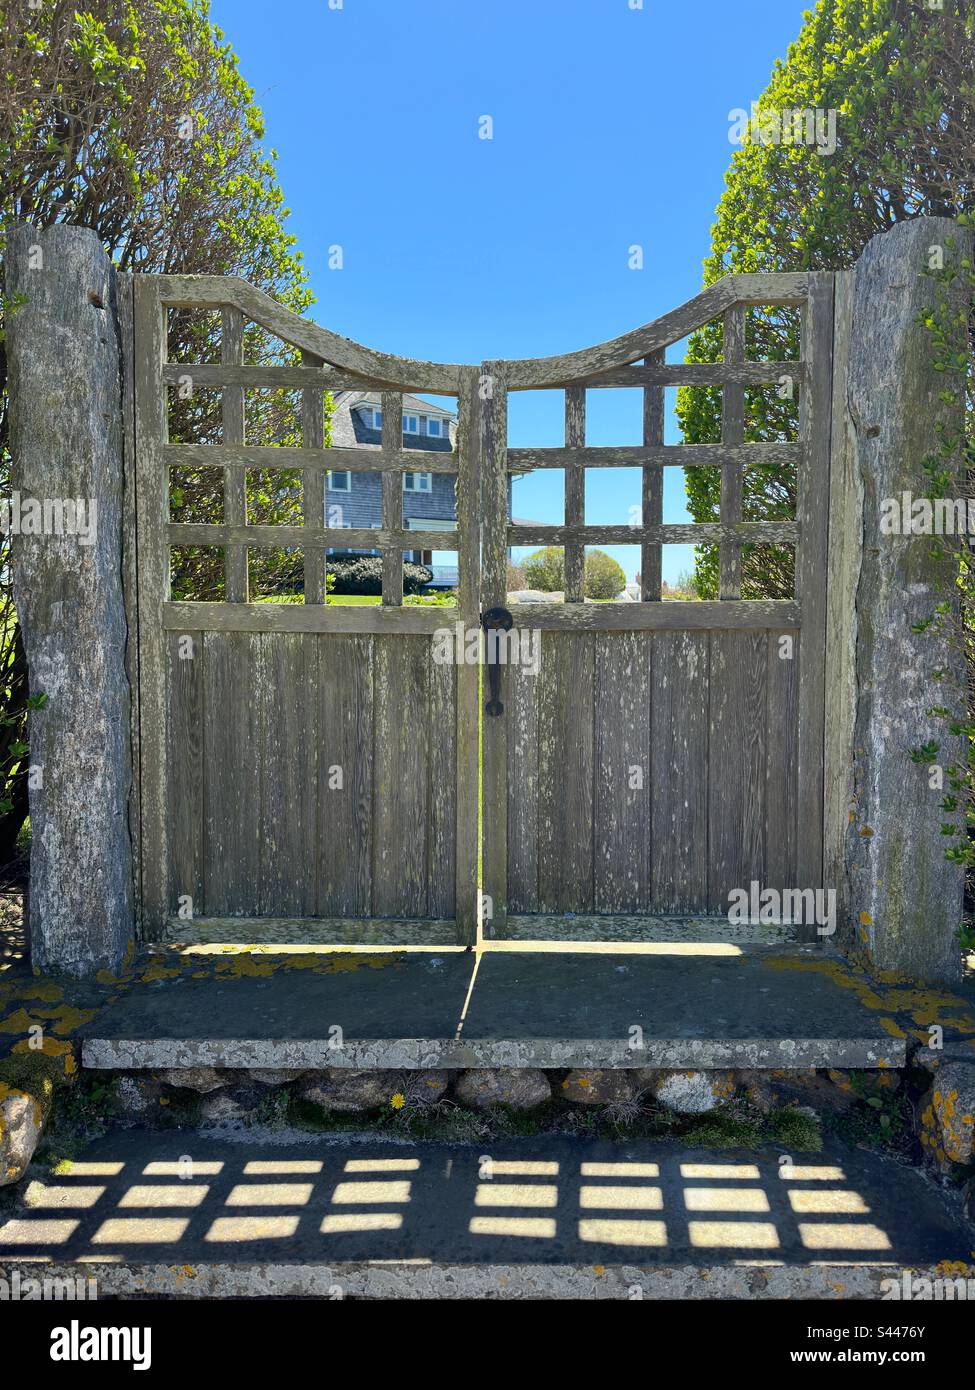 Watch Hill, Rhode Island, USA: Cancello di legno con gradini. Pilastri di pietra e alberi su ogni lato che ha luce che scorre attraverso le crepe nel cancello. Casa in lontananza. Foto Stock